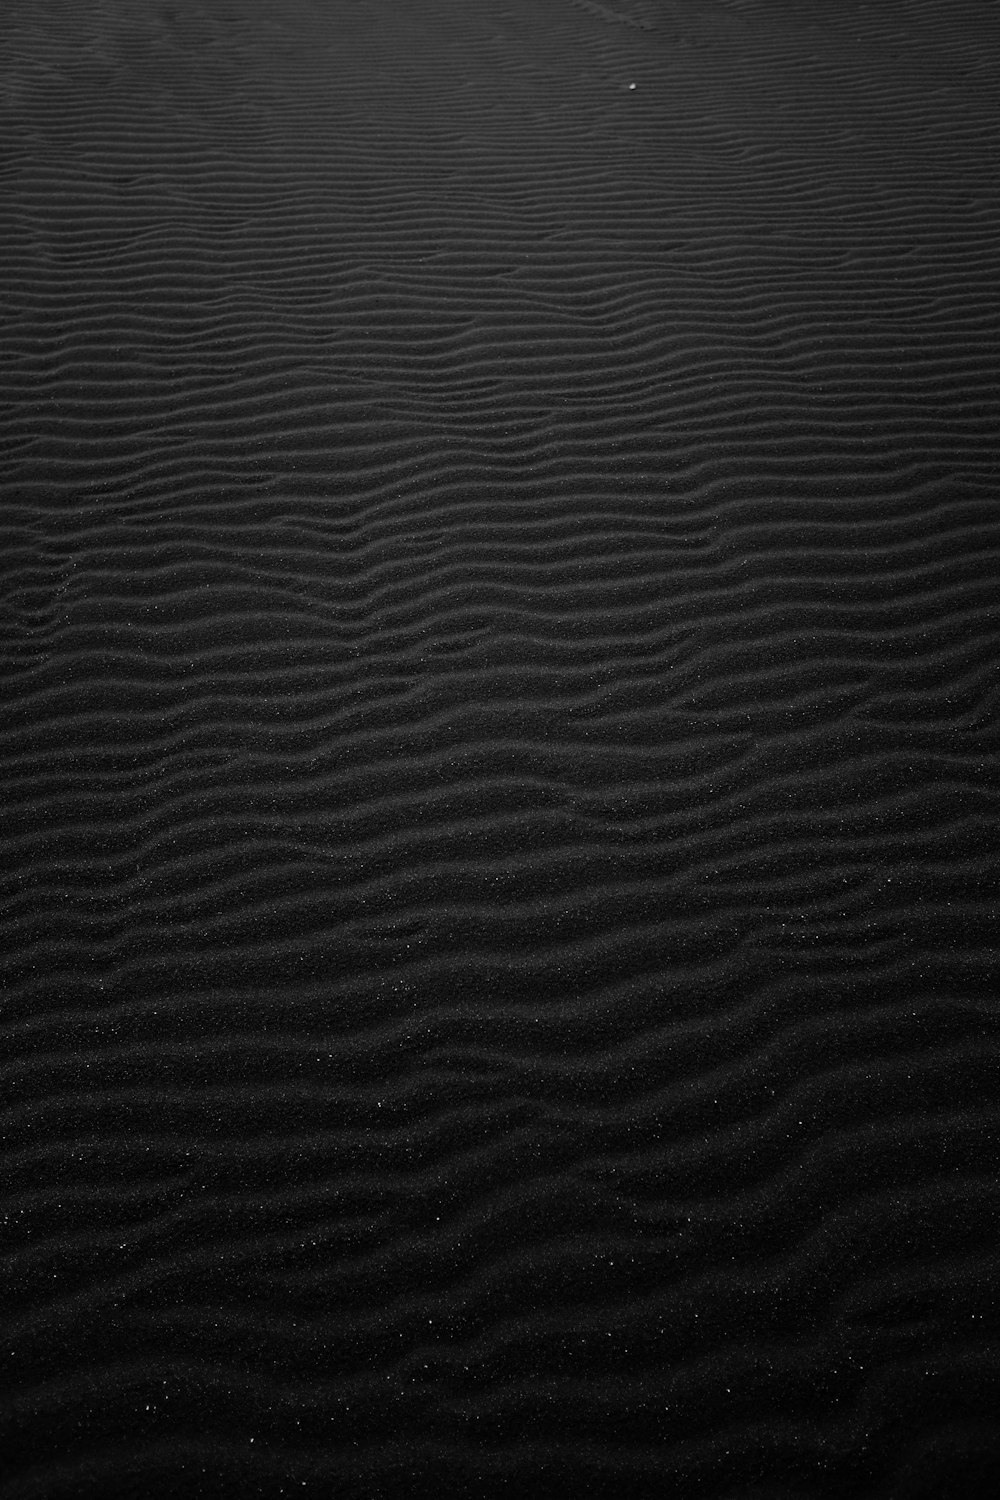 Fotografía en escala de grises de arena